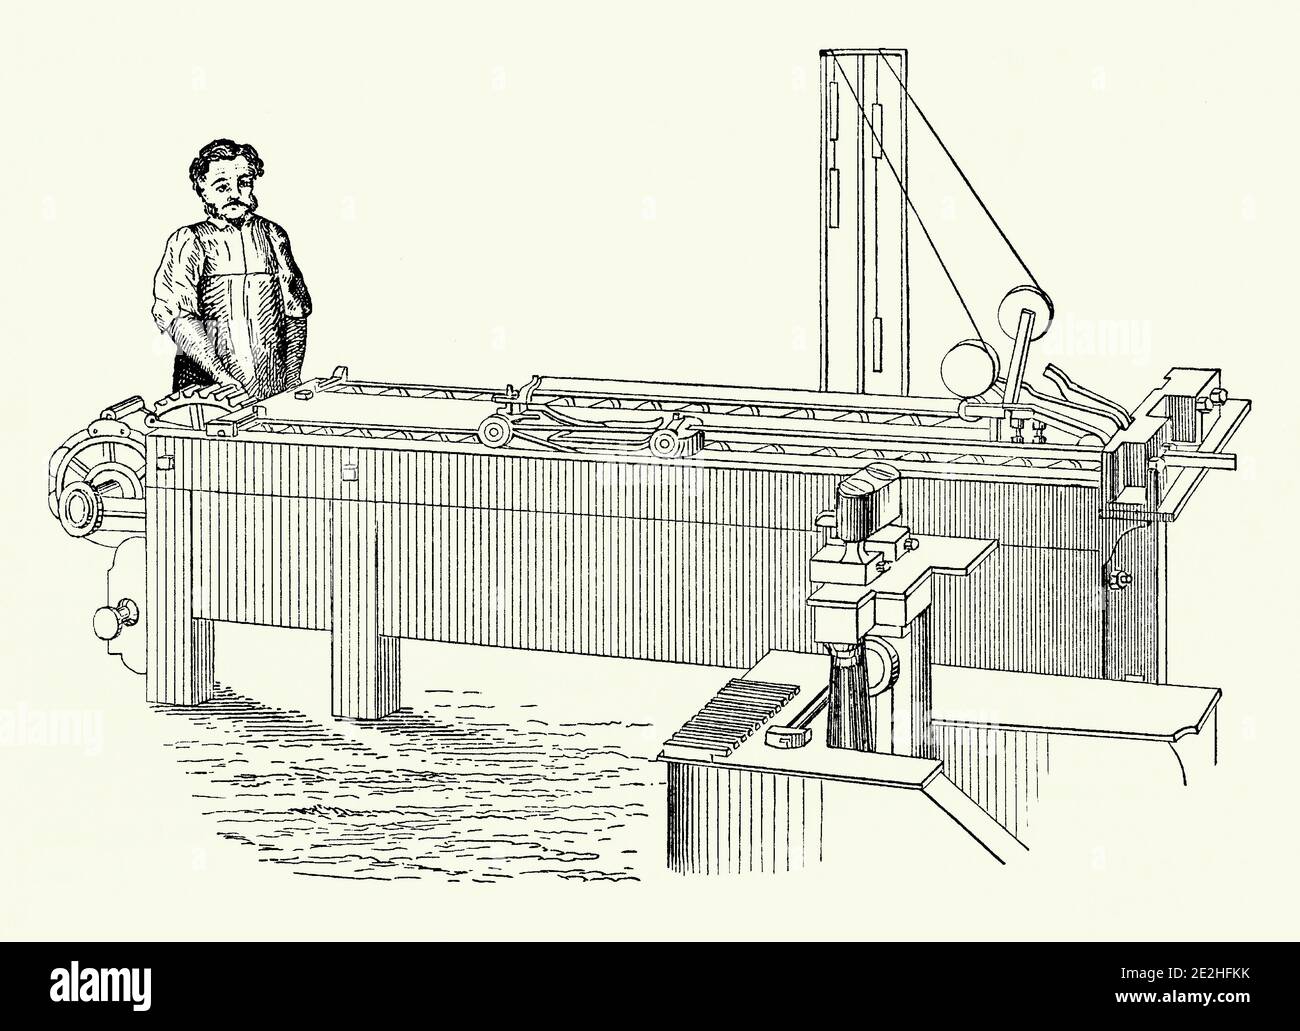 Un viejo grabado de un hombre en un banco de dibujo en el 1800s. Es de un libro de ingeniería mecánica victoriano del 1880s. La máquina se utiliza para dibujar tiras de metal a un espesor exacto tirando de ella a través de una abertura de restricción – de una manera similar que el alambre se dibuja al espesor correcto. Fue inventado por Sir John Barton (1771–1834), un ingeniero inglés. Barton sirvió como contralor adjunto de la Royal Mint a principios del siglo XIX. También creó un micrómetro, que llamó el ‘Atómetro’, utilizado para medir pequeñas distancias. Foto de stock